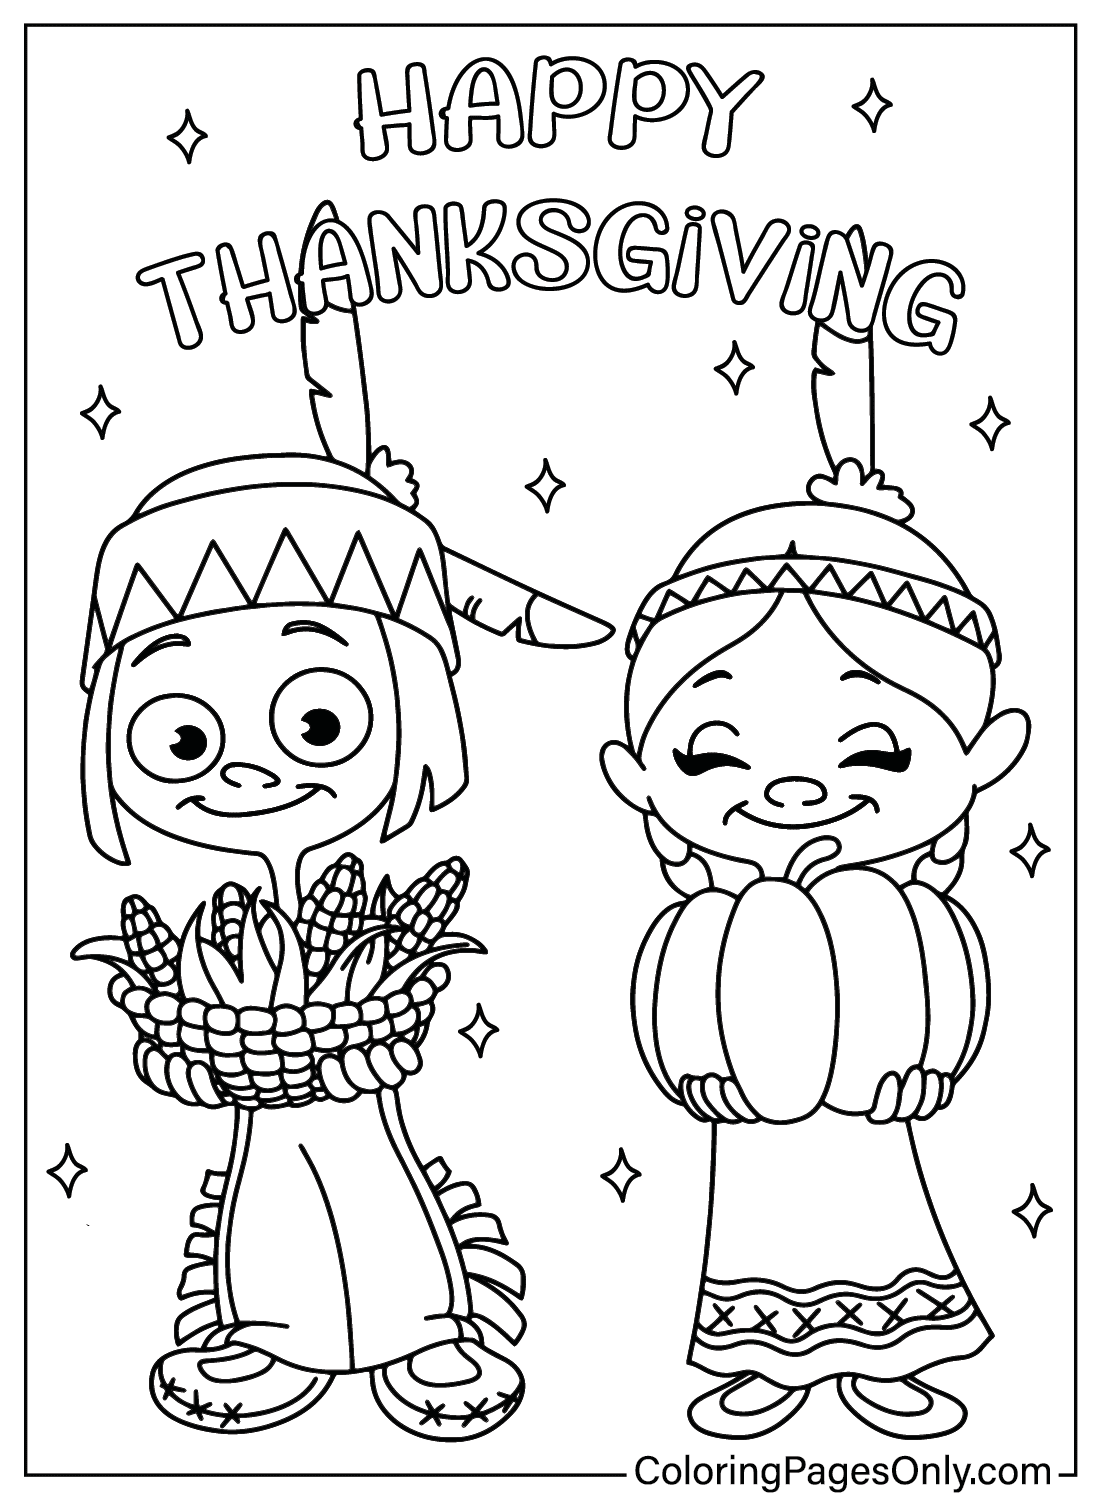 Desenho para colorir desenho de ação de graças from Thanksgiving Cartoon